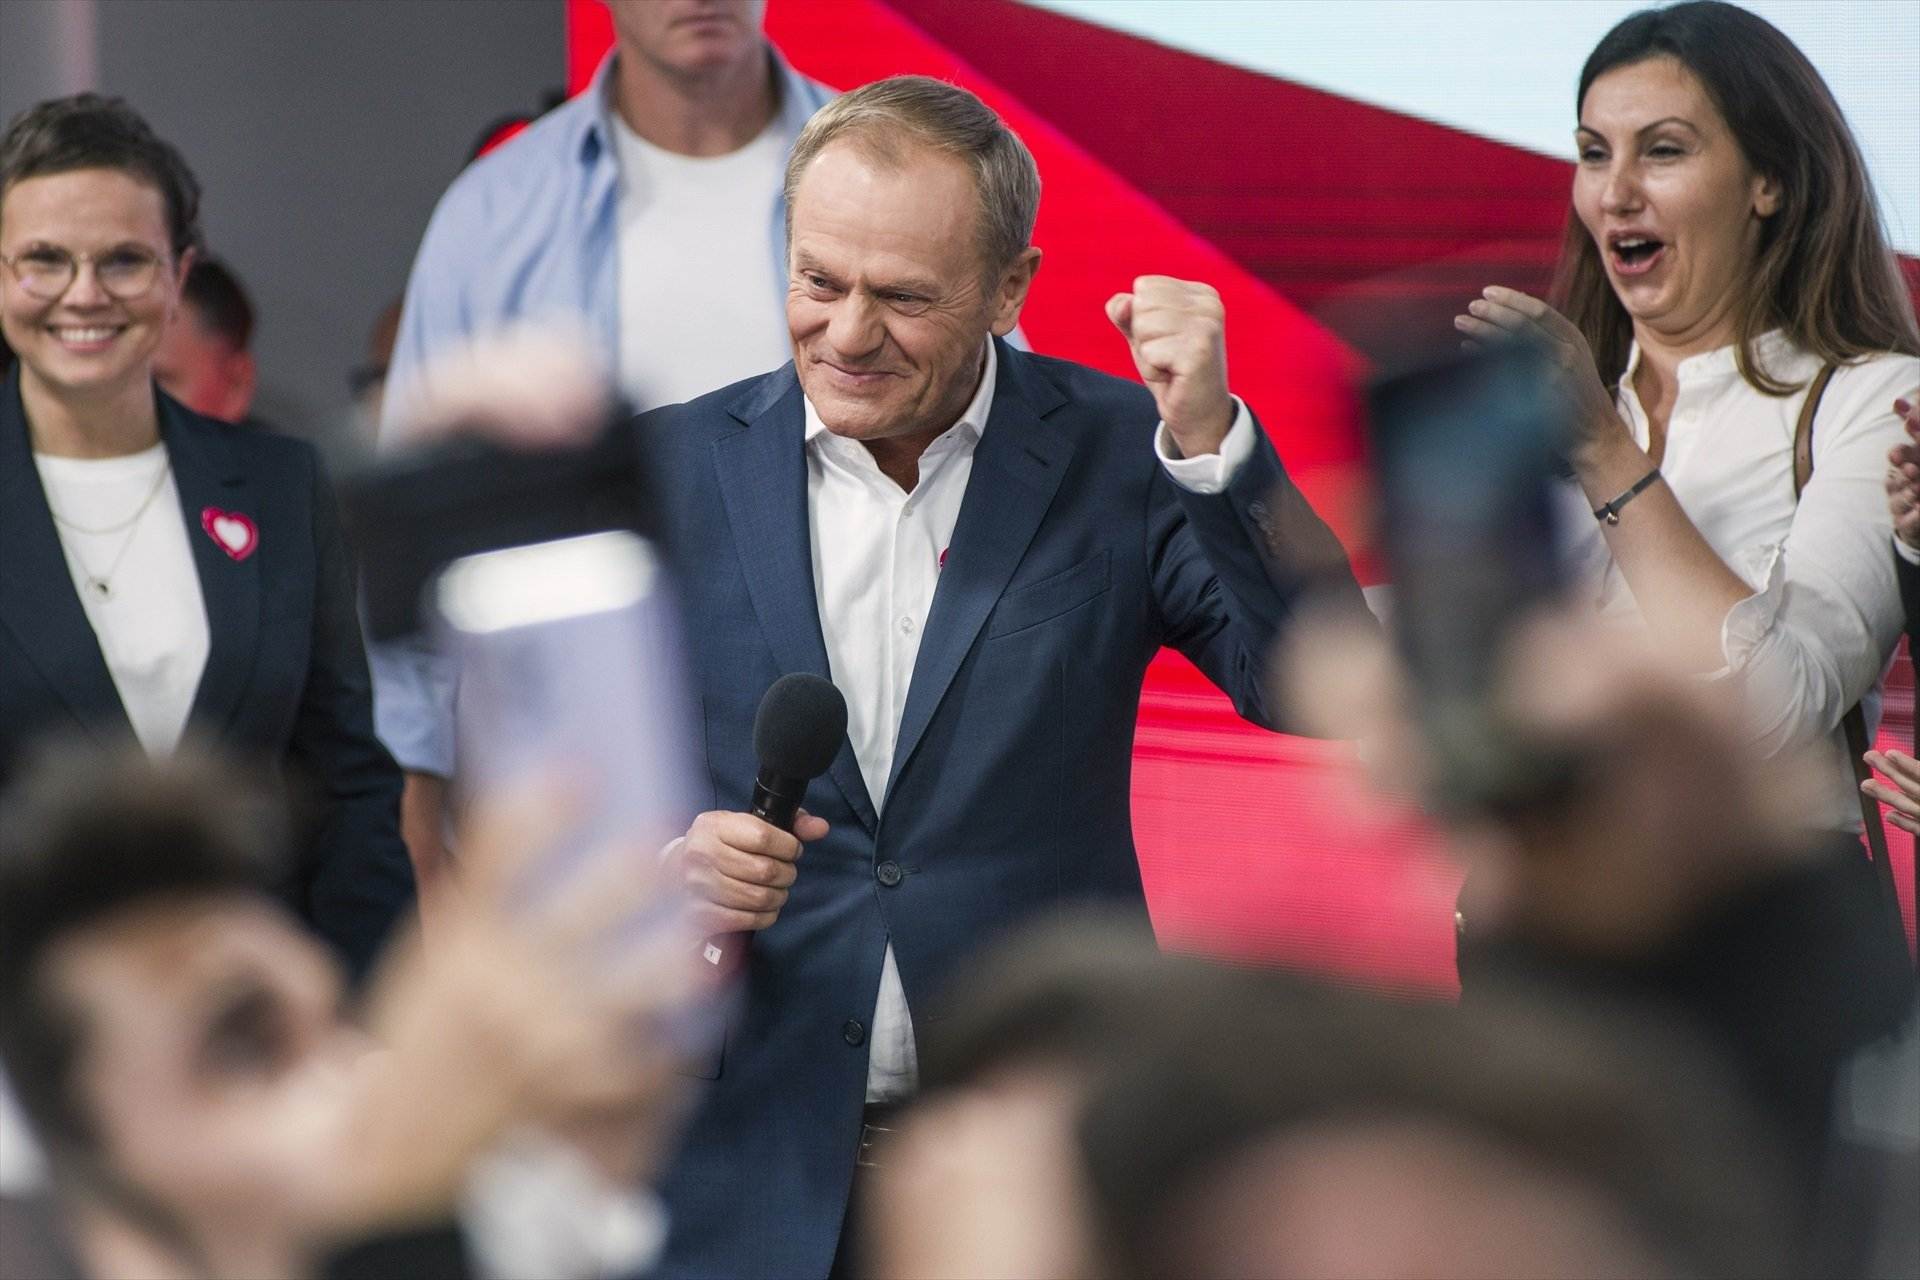 El escrutinio confirma que Tusk podrá formar gobierno en Polonia: la ultraderecha pierde la mayoría